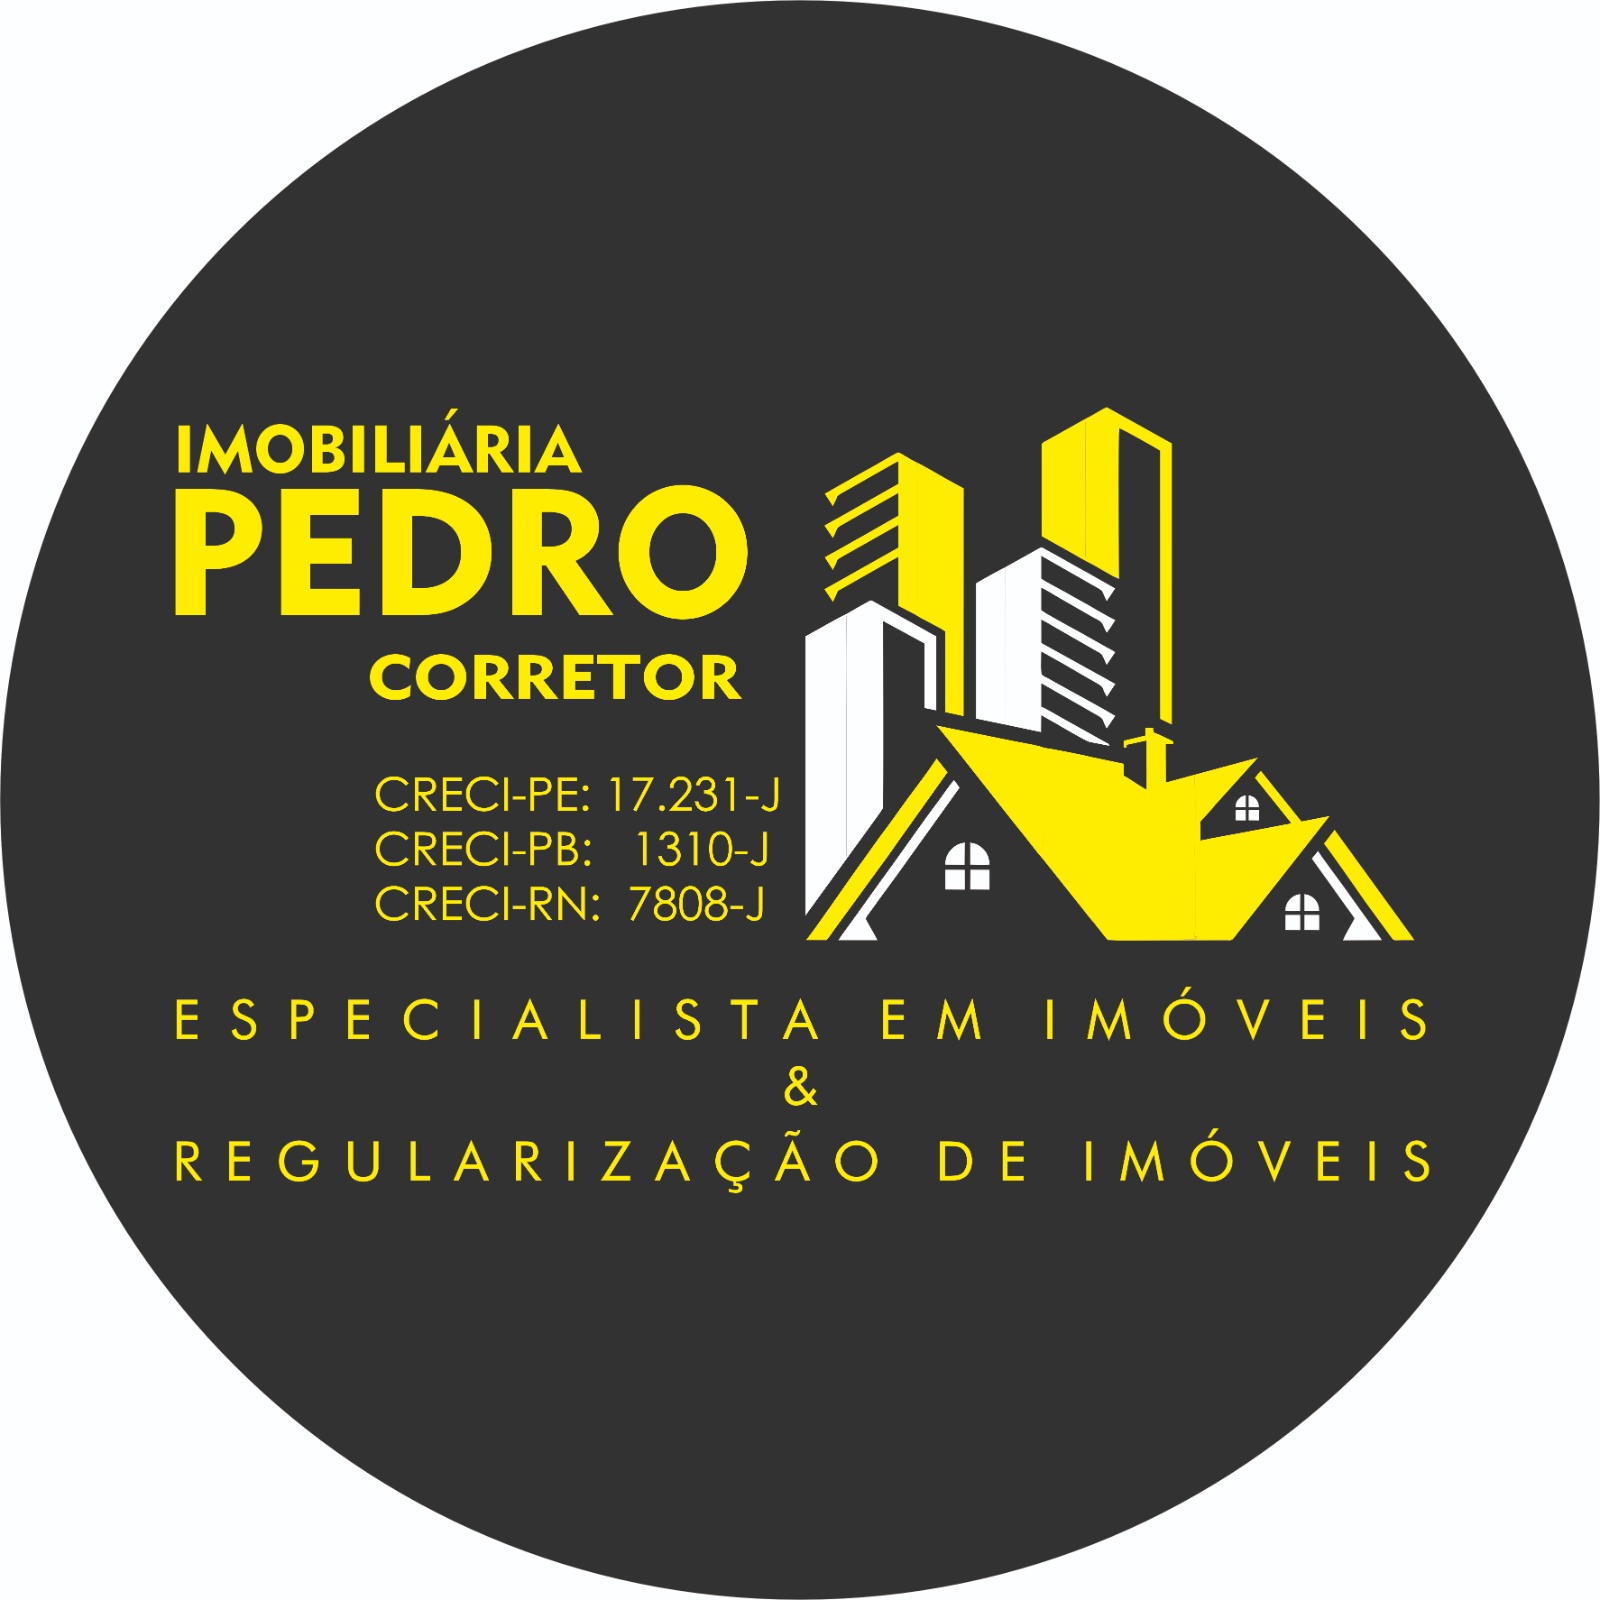 Imobiliária Pedro Corretor - Os melhores imóveis de Pernambuco e região